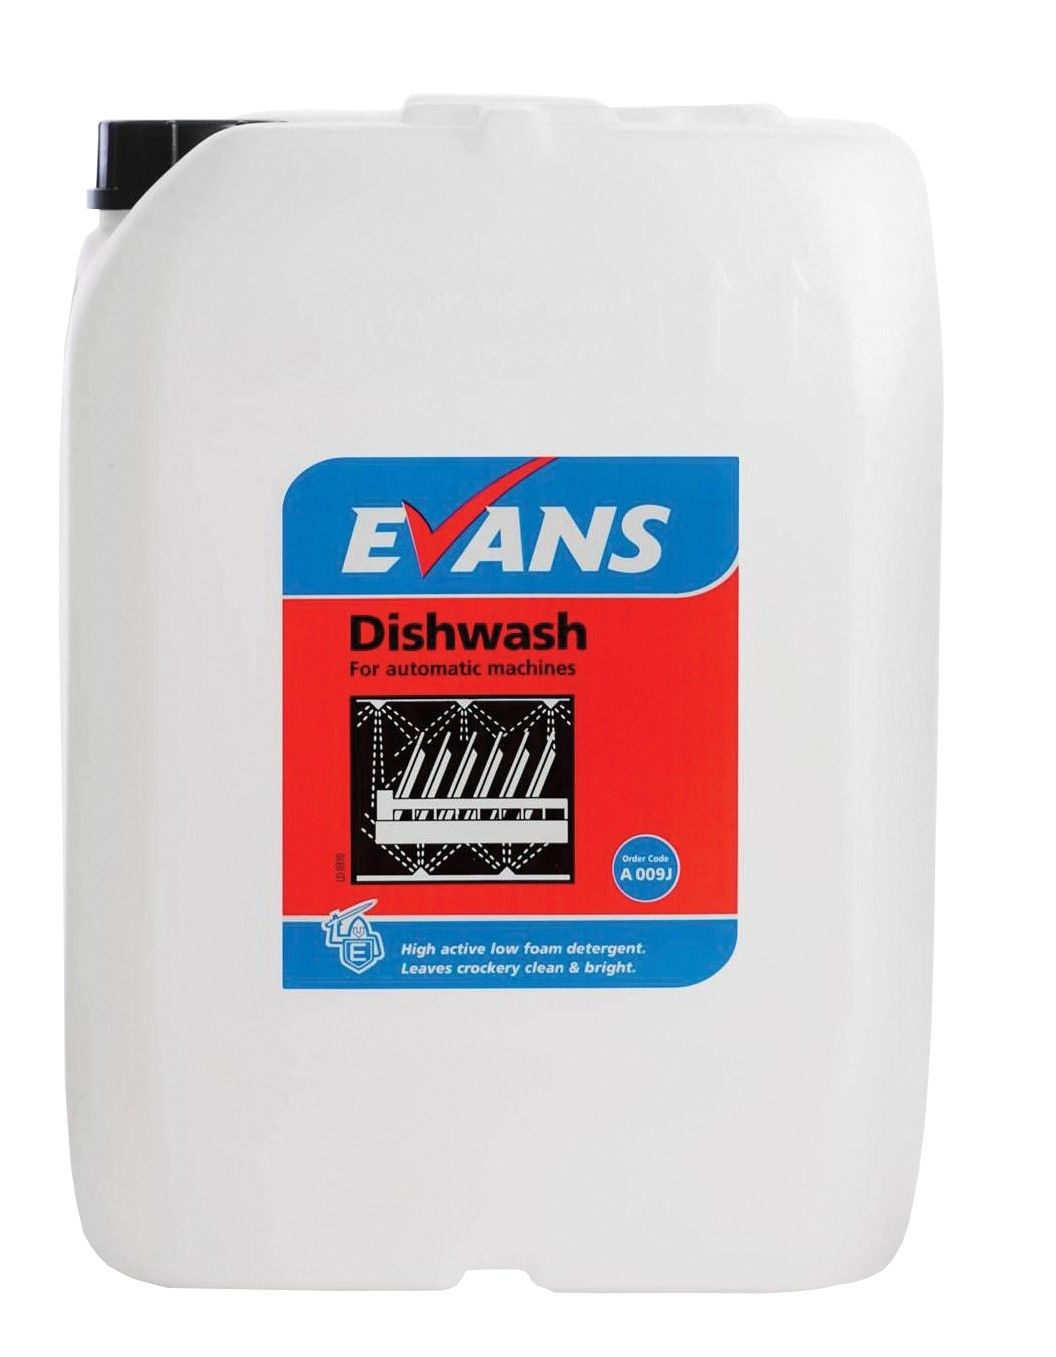 Evans Dishwash - General Machine Detergent 20 Ltr